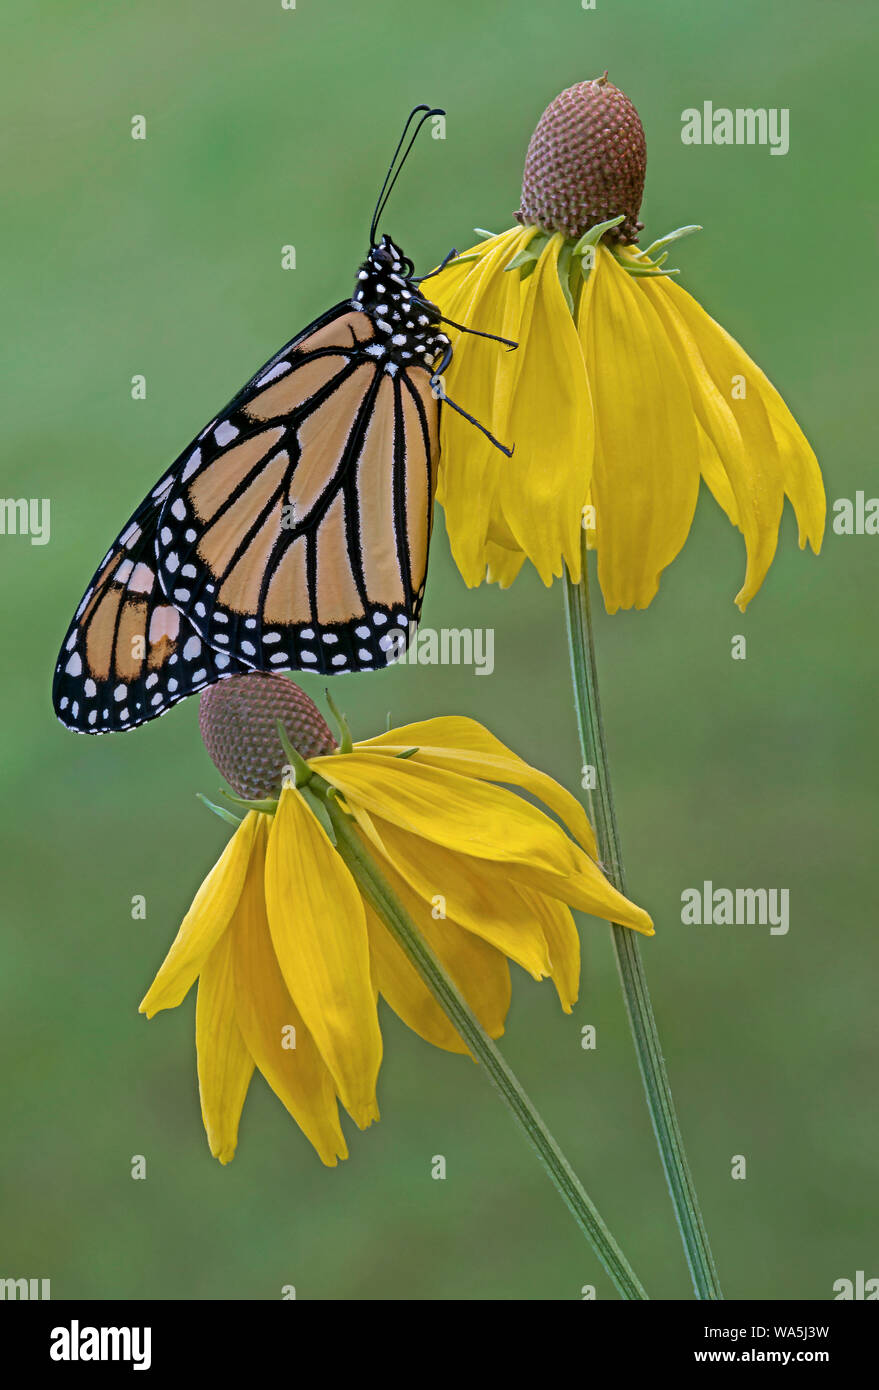 Adulto de la mariposa monarca (Danaus plexippus) sobre gris encabezada Coneflower (Ratibida pinnata), Este de los EE.UU., por omitir Moody/Dembinsky Foto Assoc Foto de stock